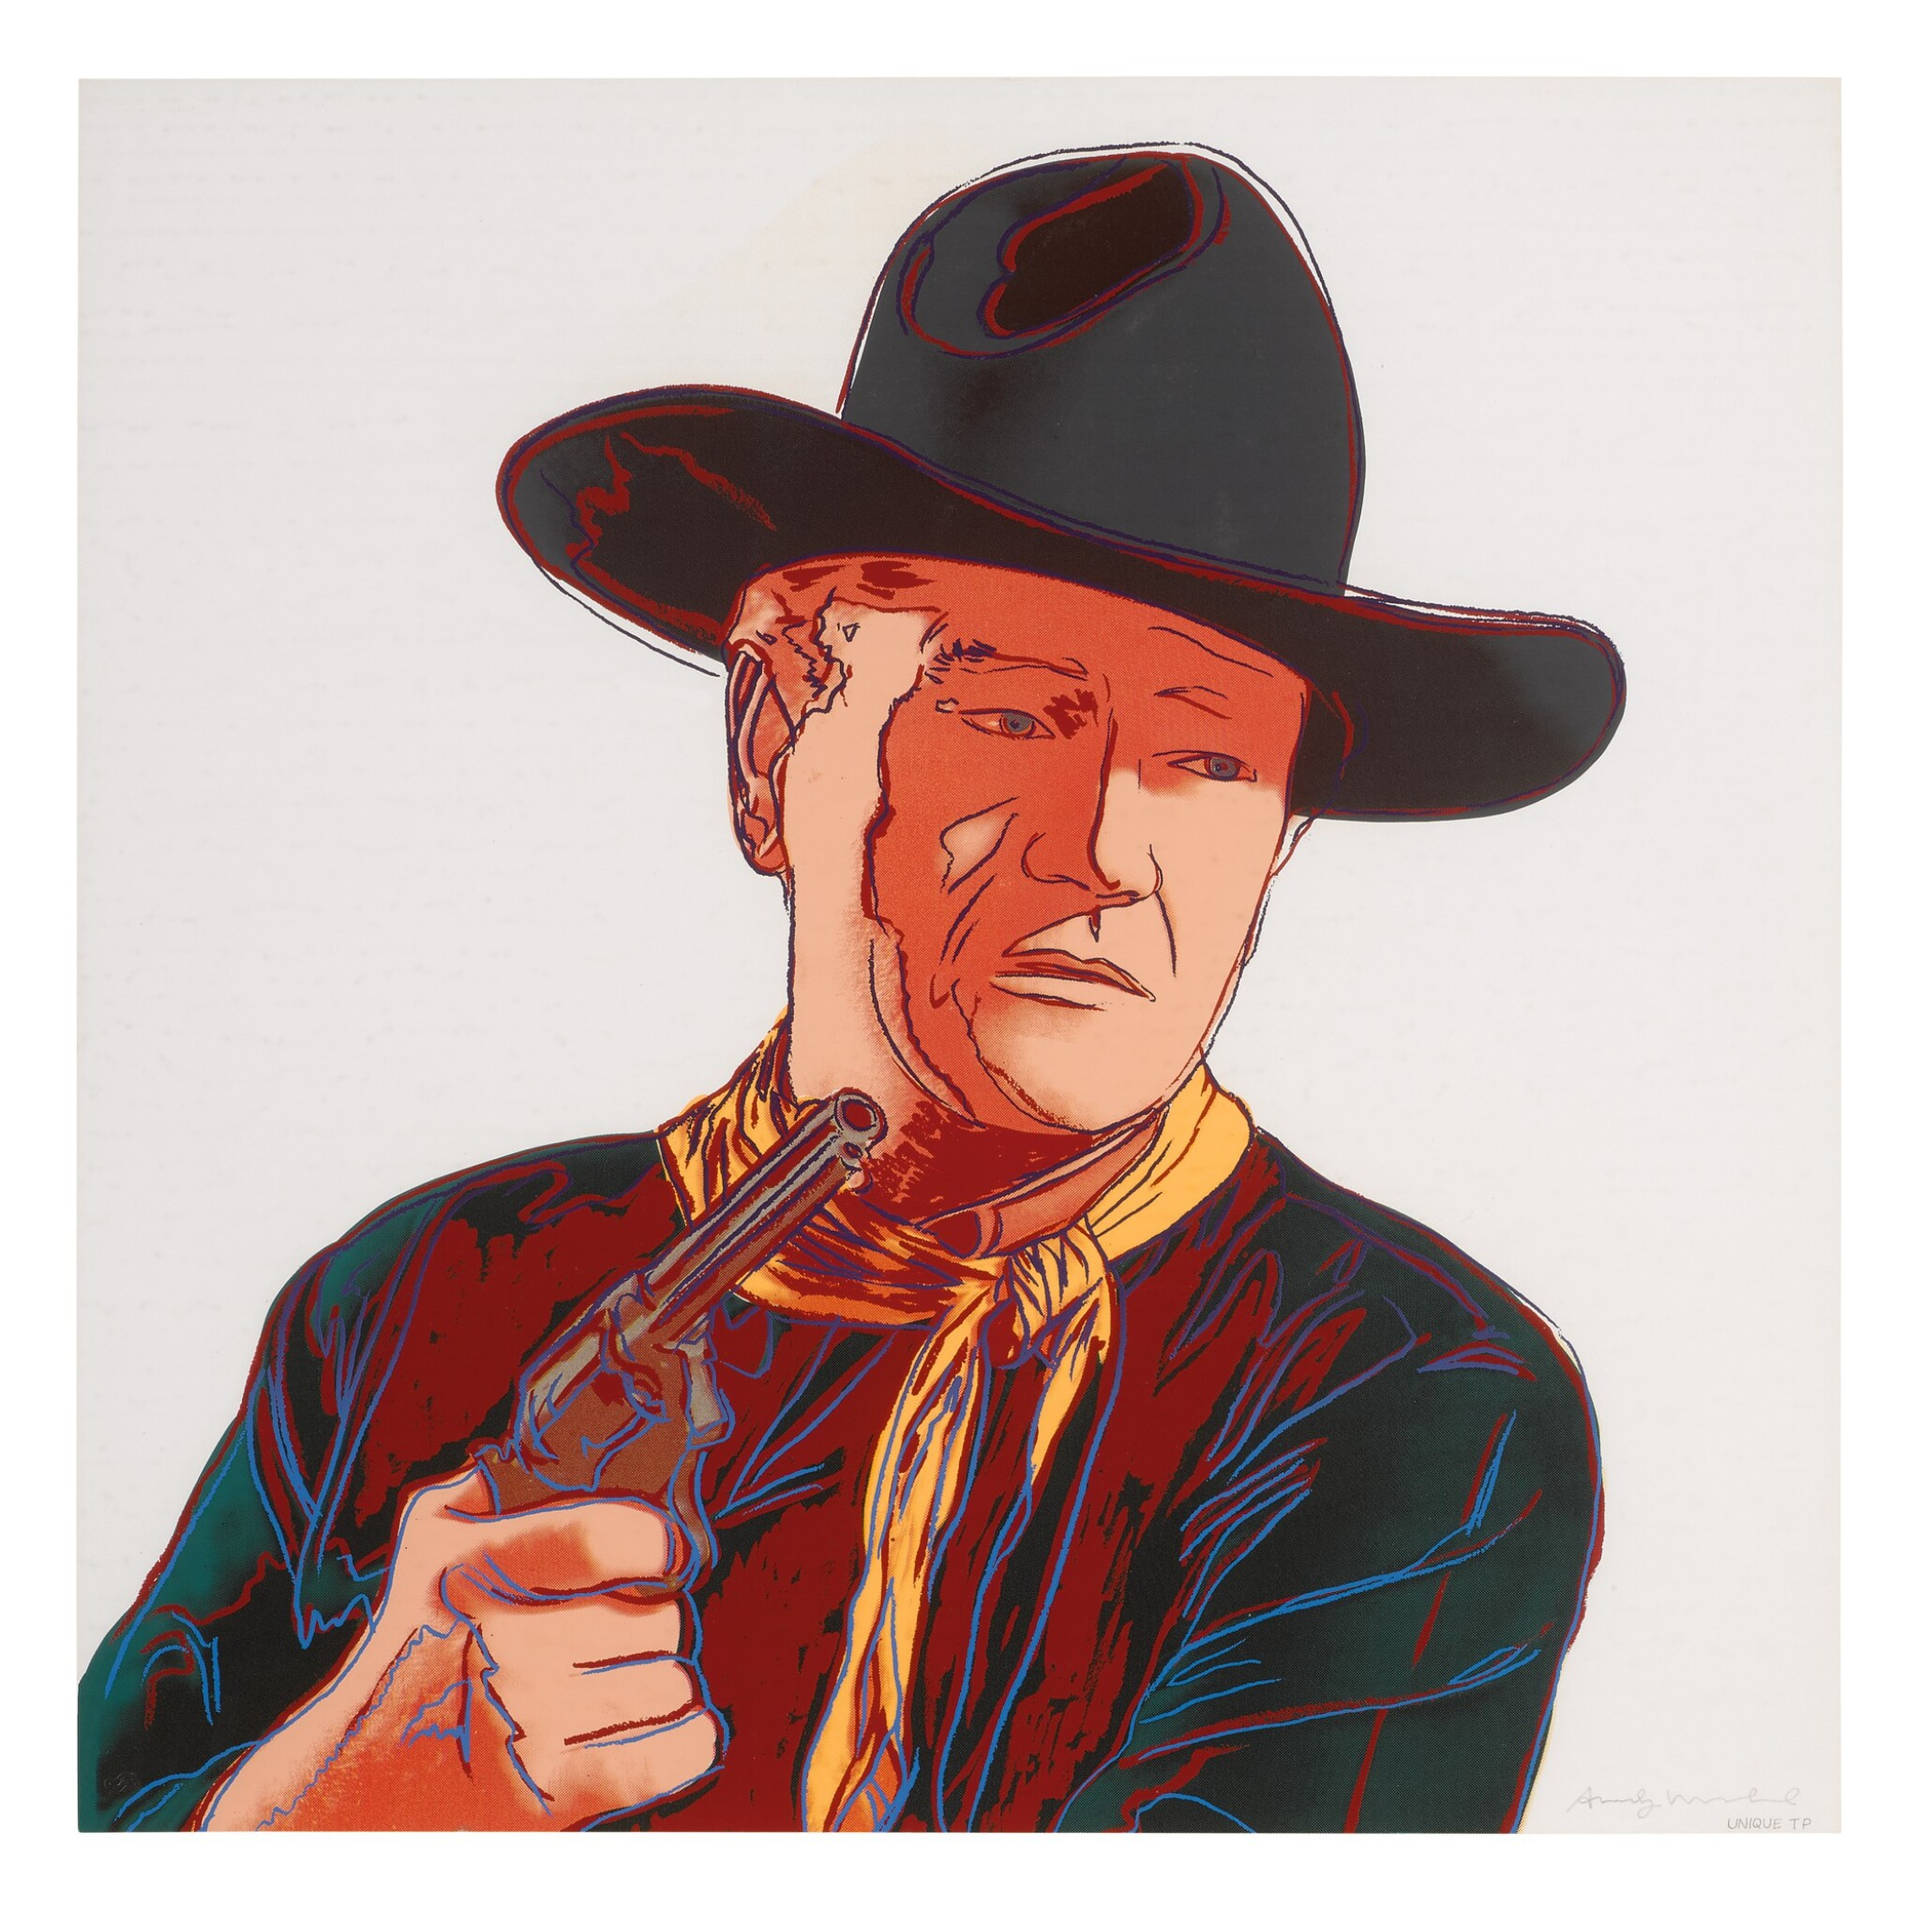 John Wayne Digital Illustration. Wallpaper